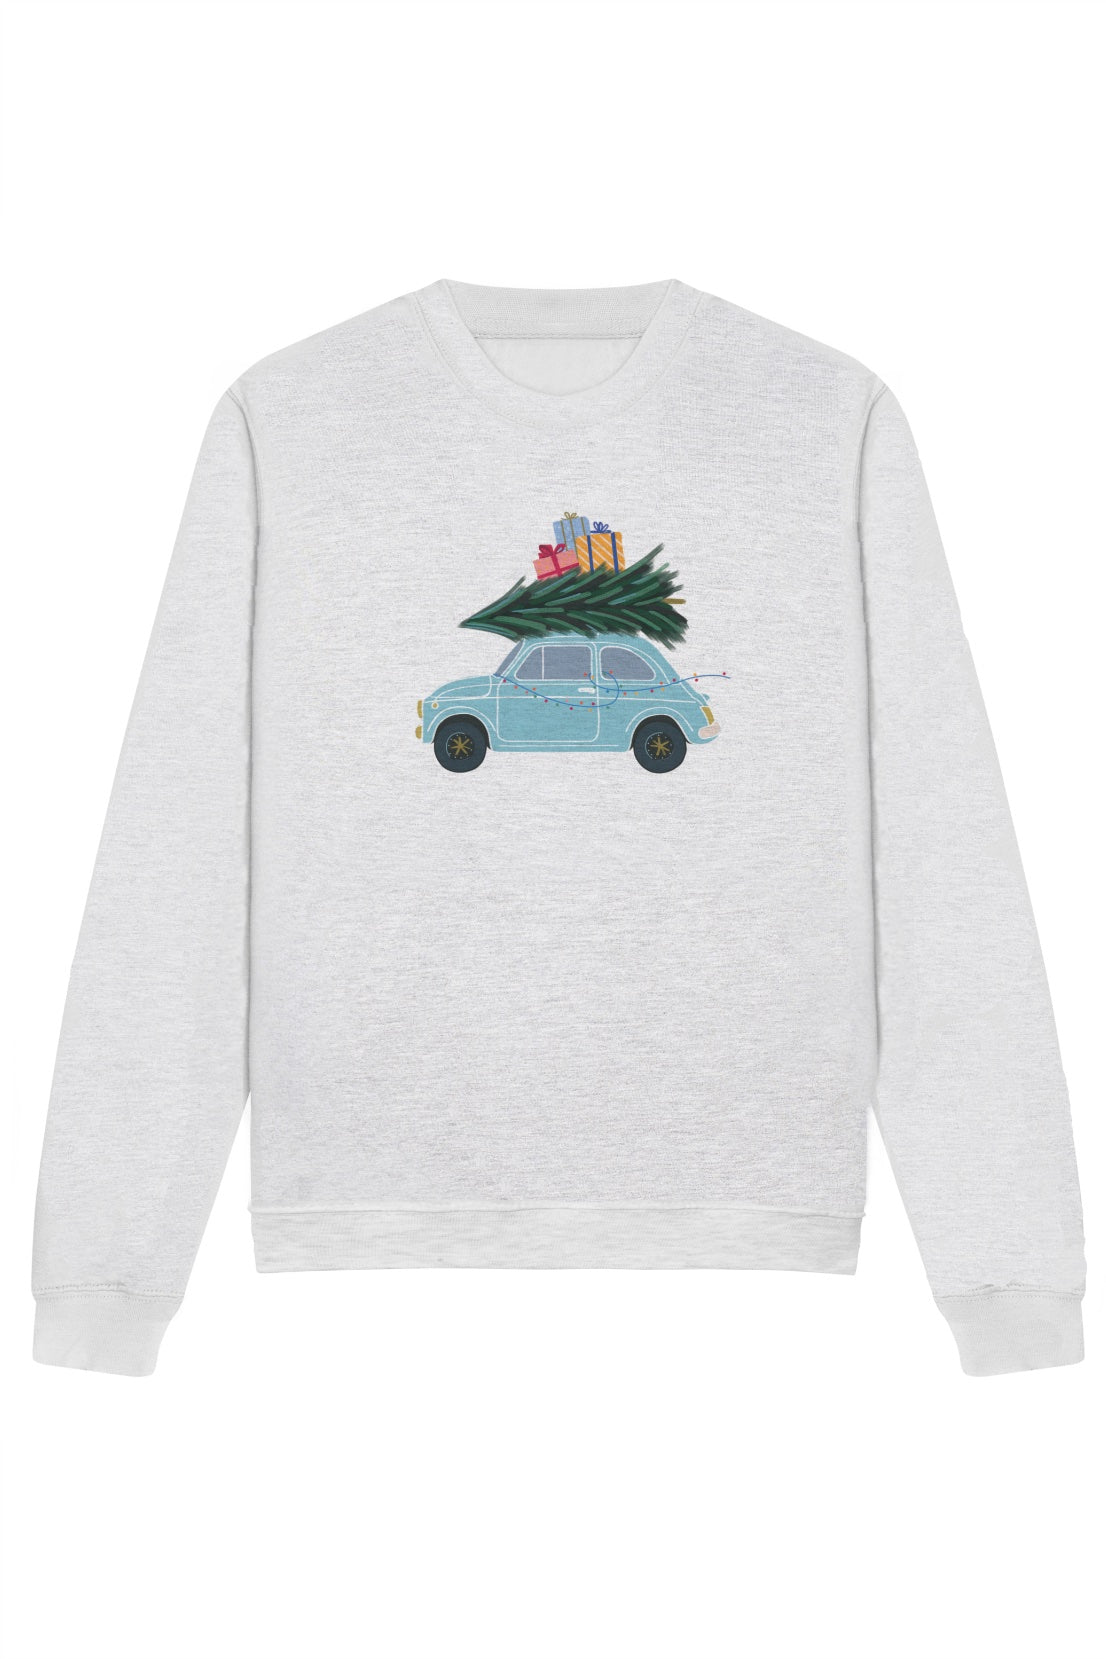 O&F Festive Car Sweatshirt